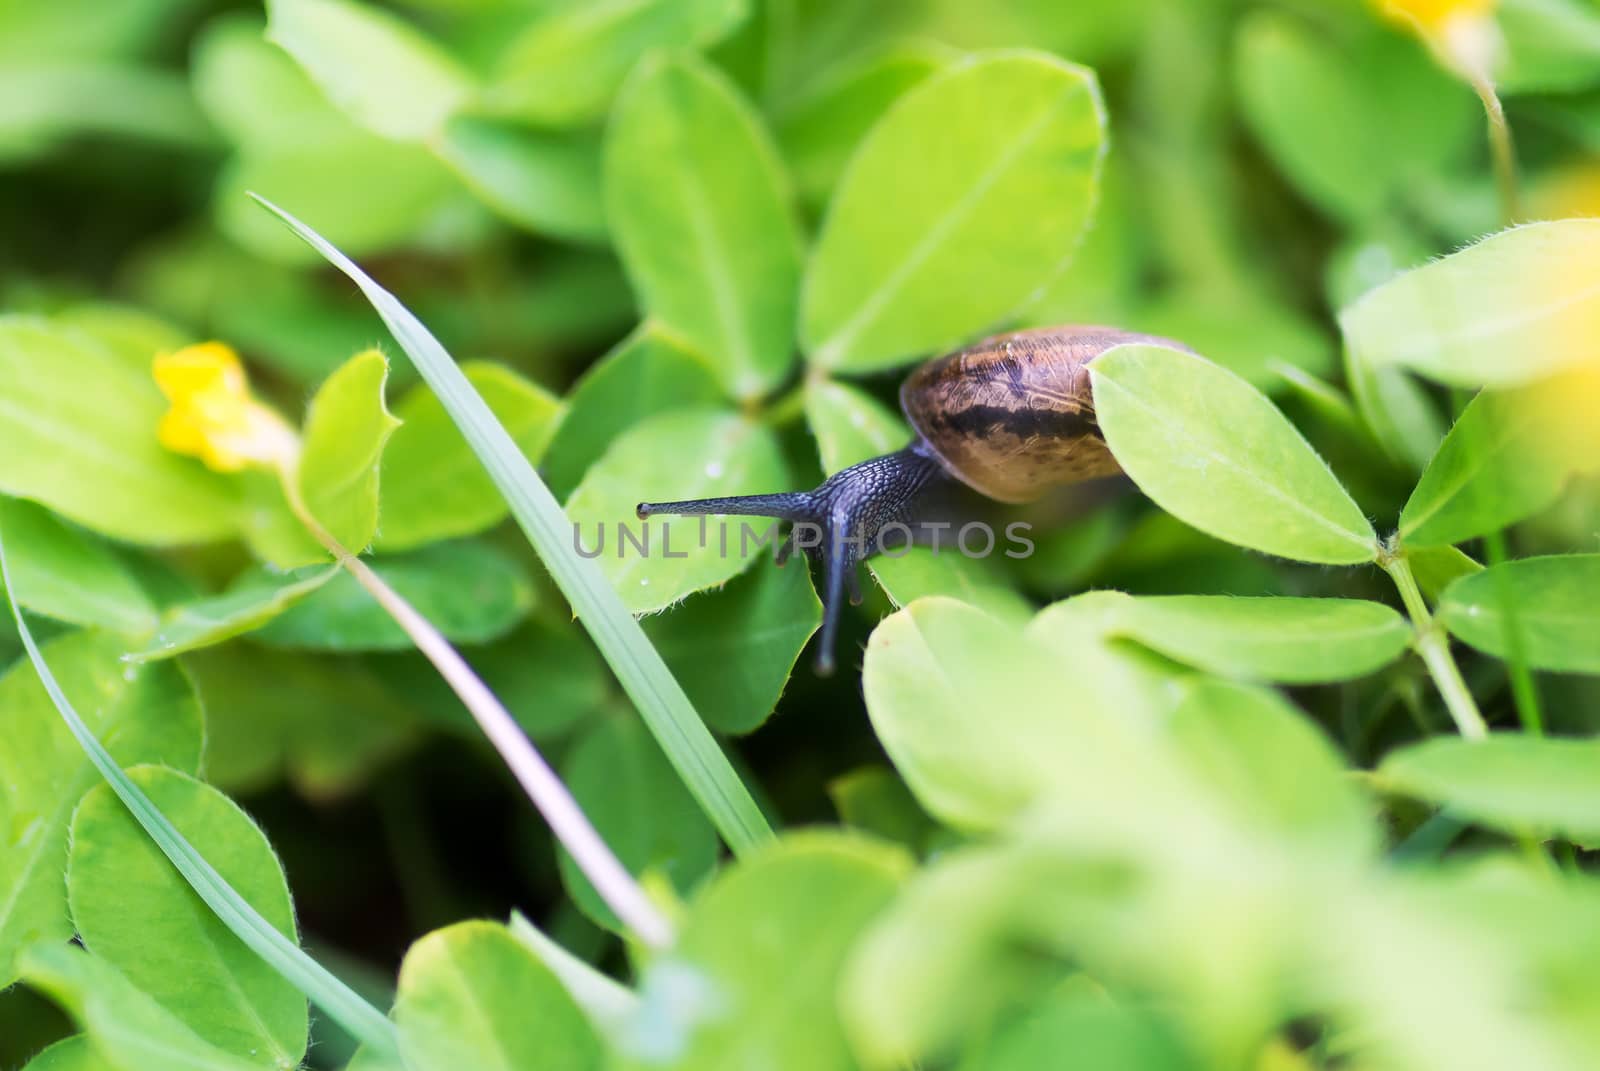 An Snail on leaf in garden green grass .